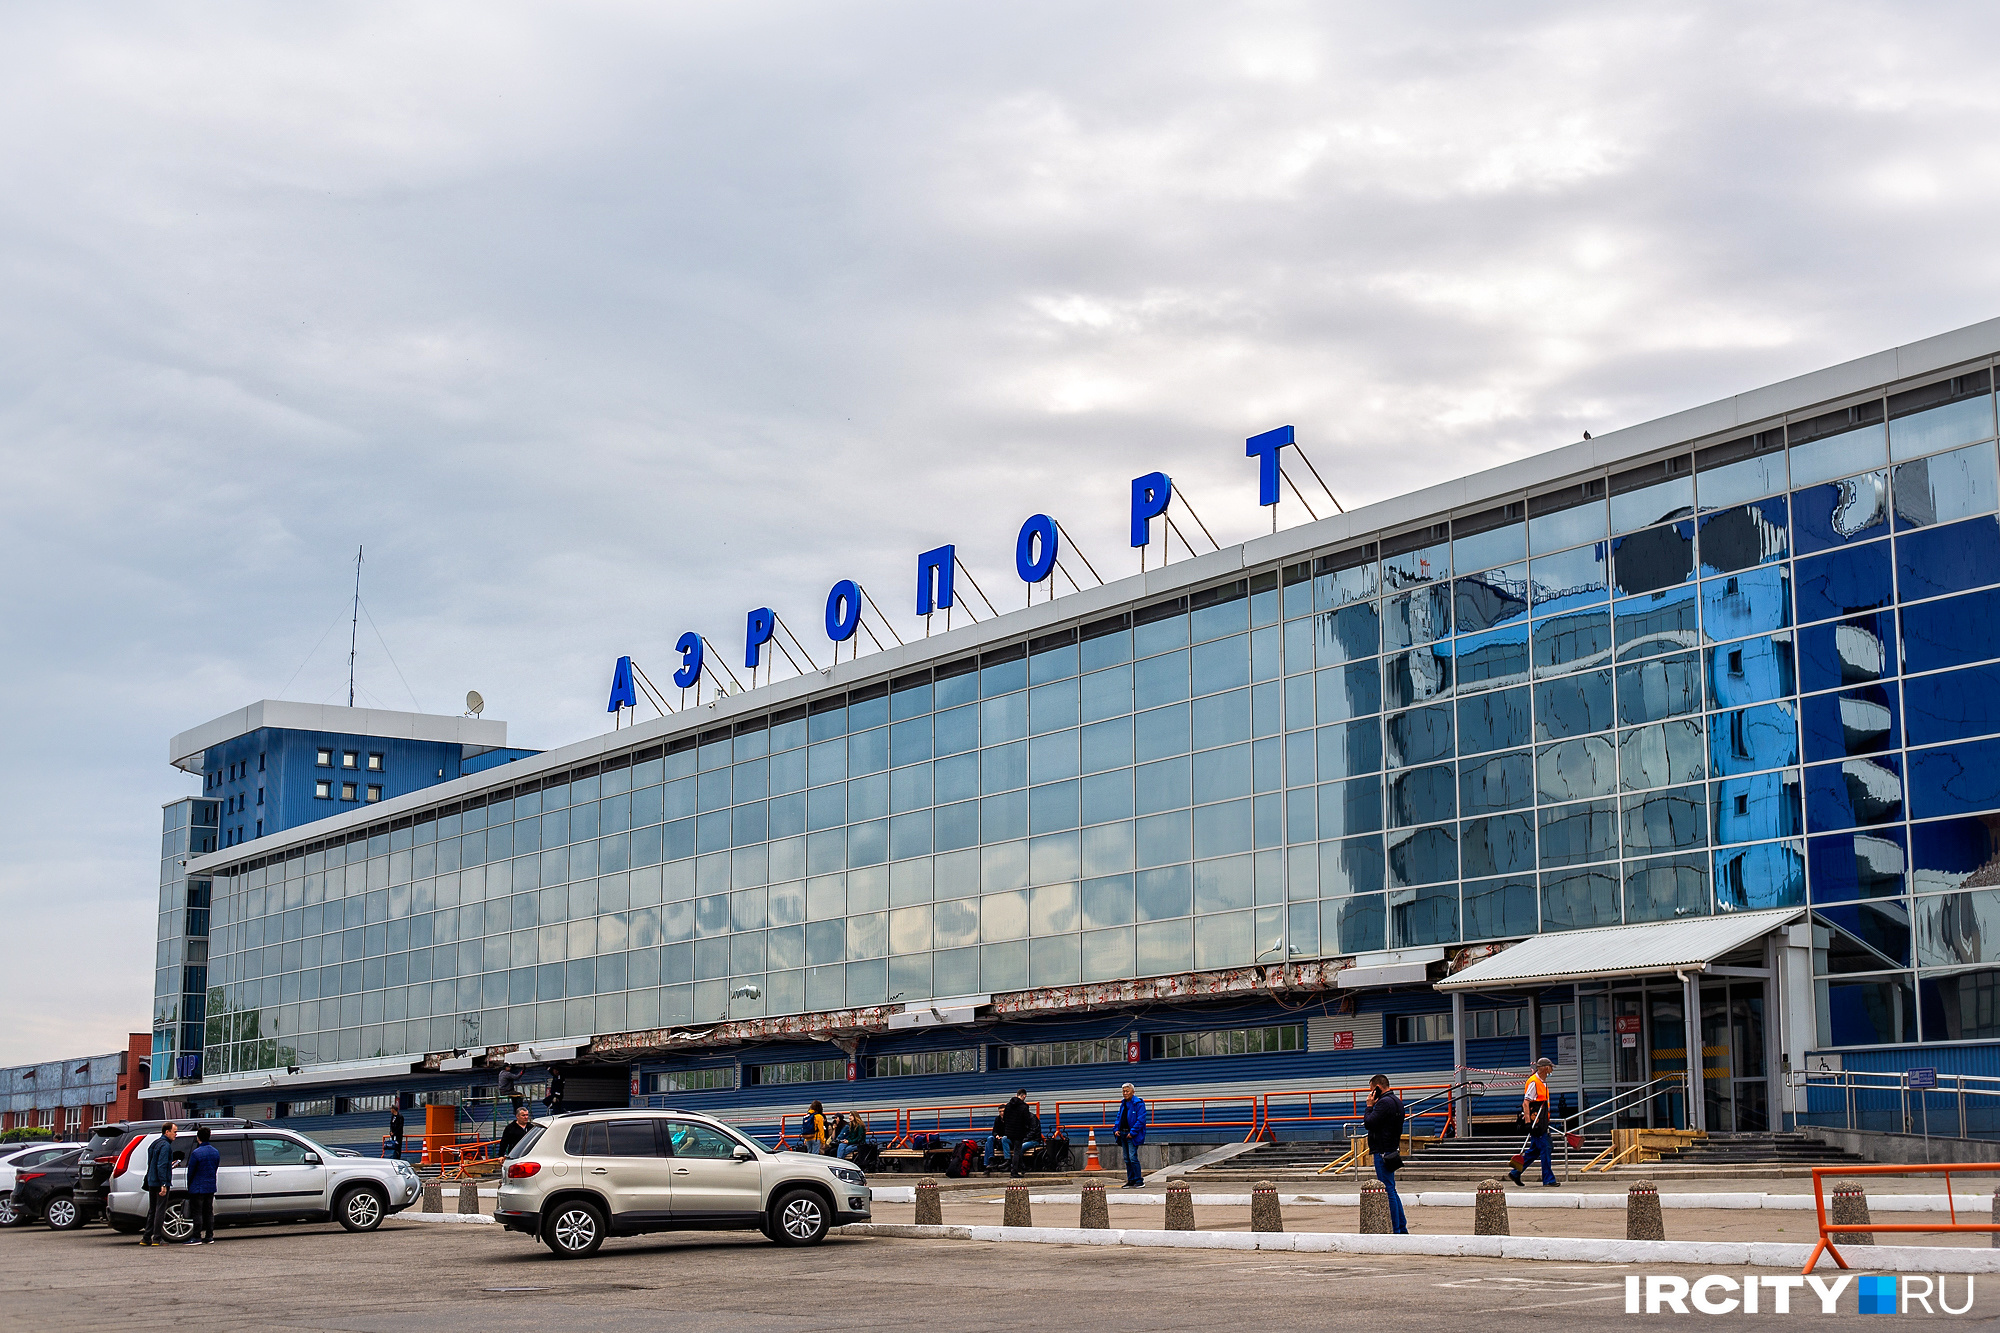 Так выглядит аэропорт Иркутска